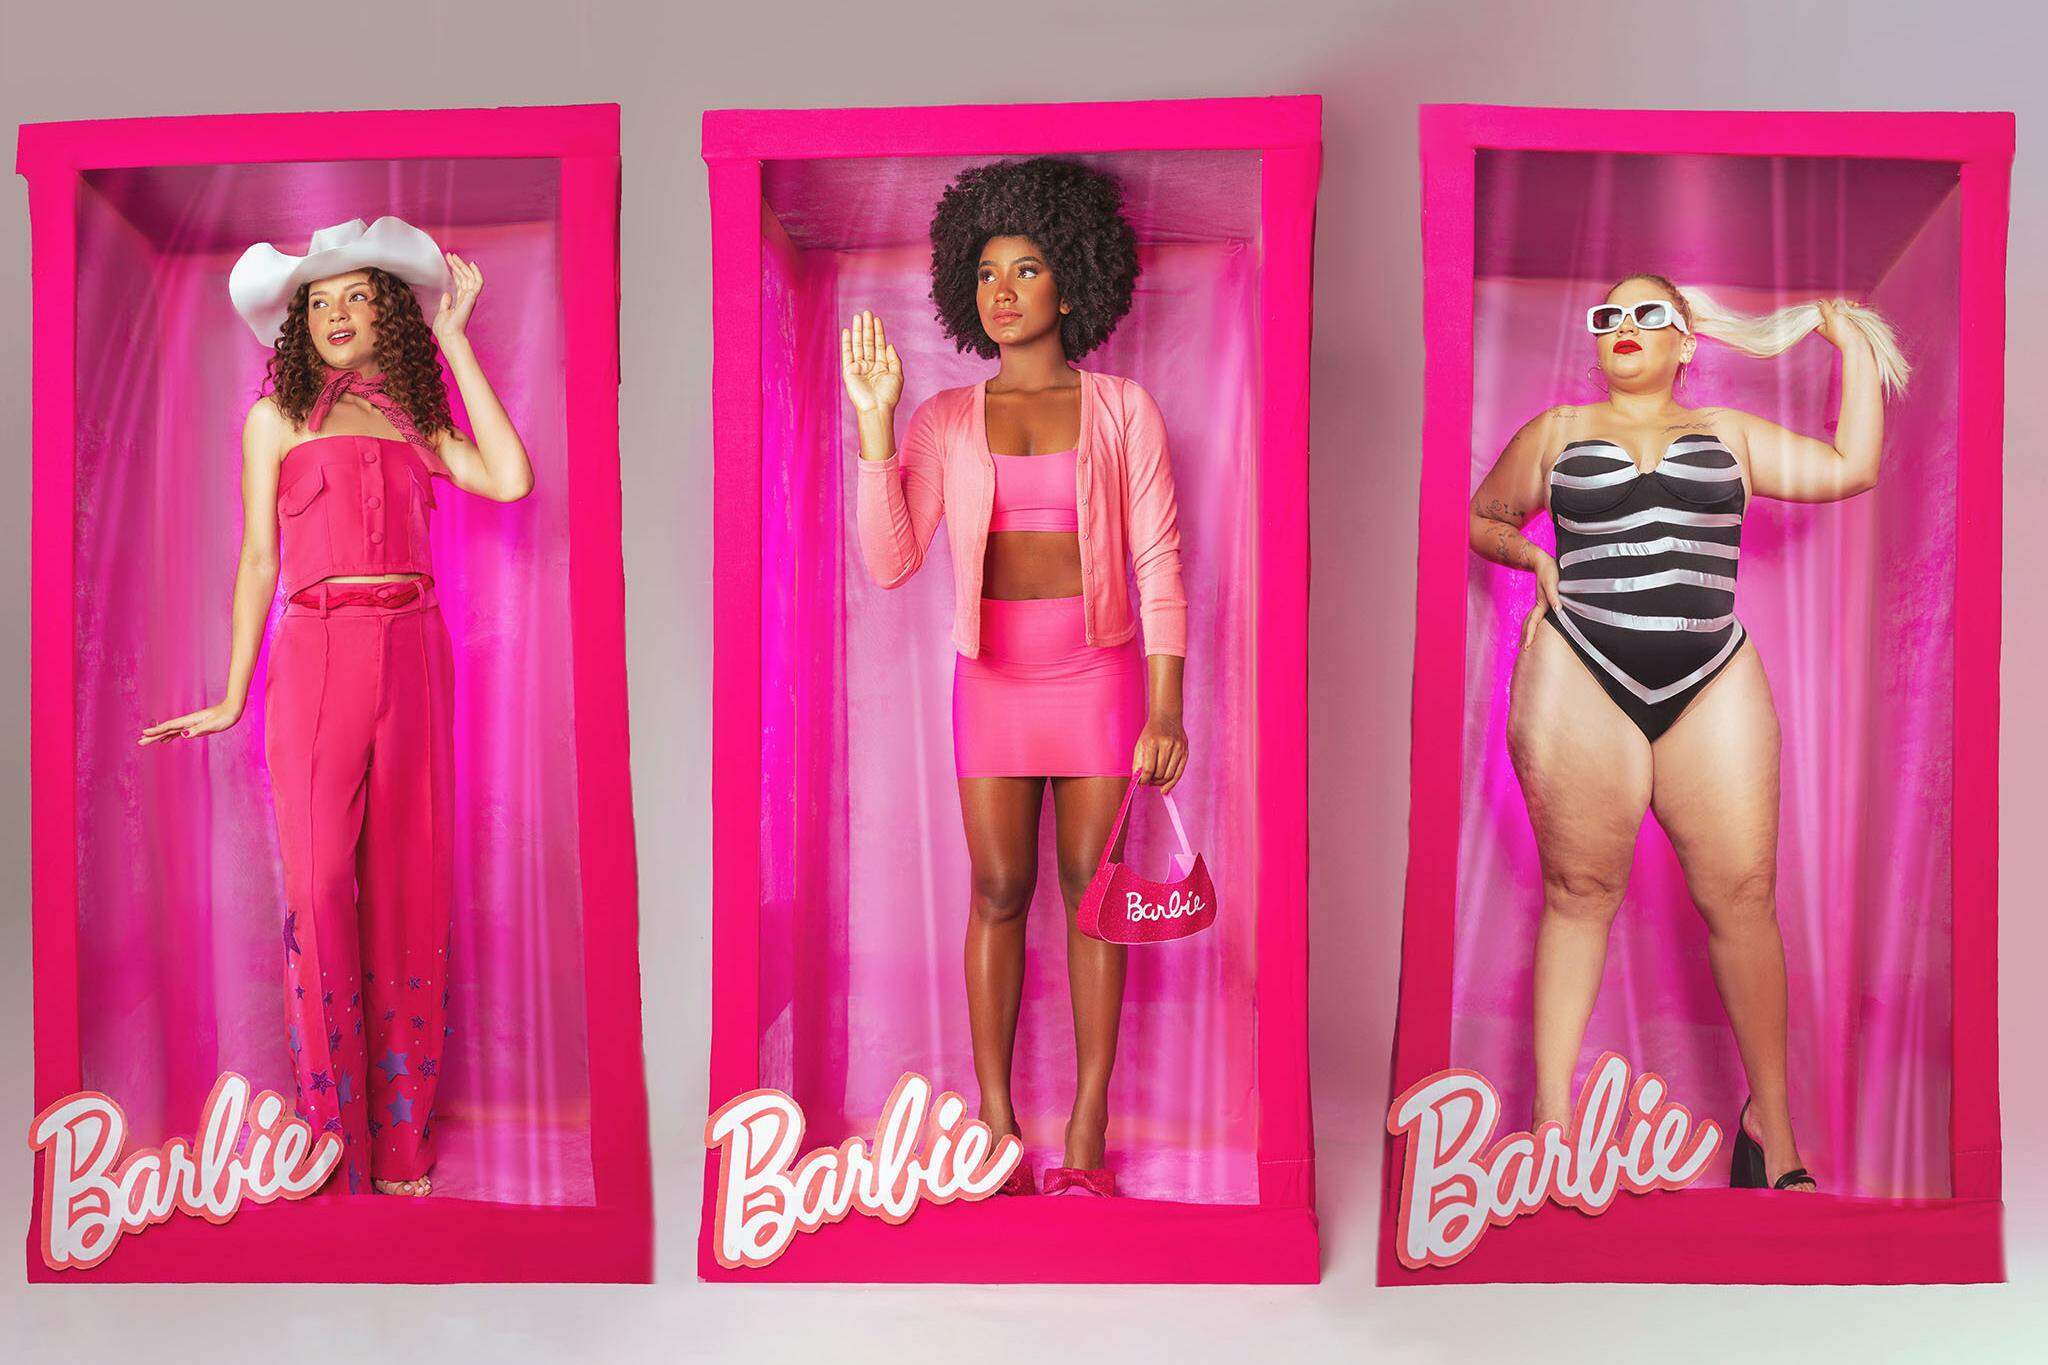 Idosa celebra aniversário com roupa e decoração da Barbie em